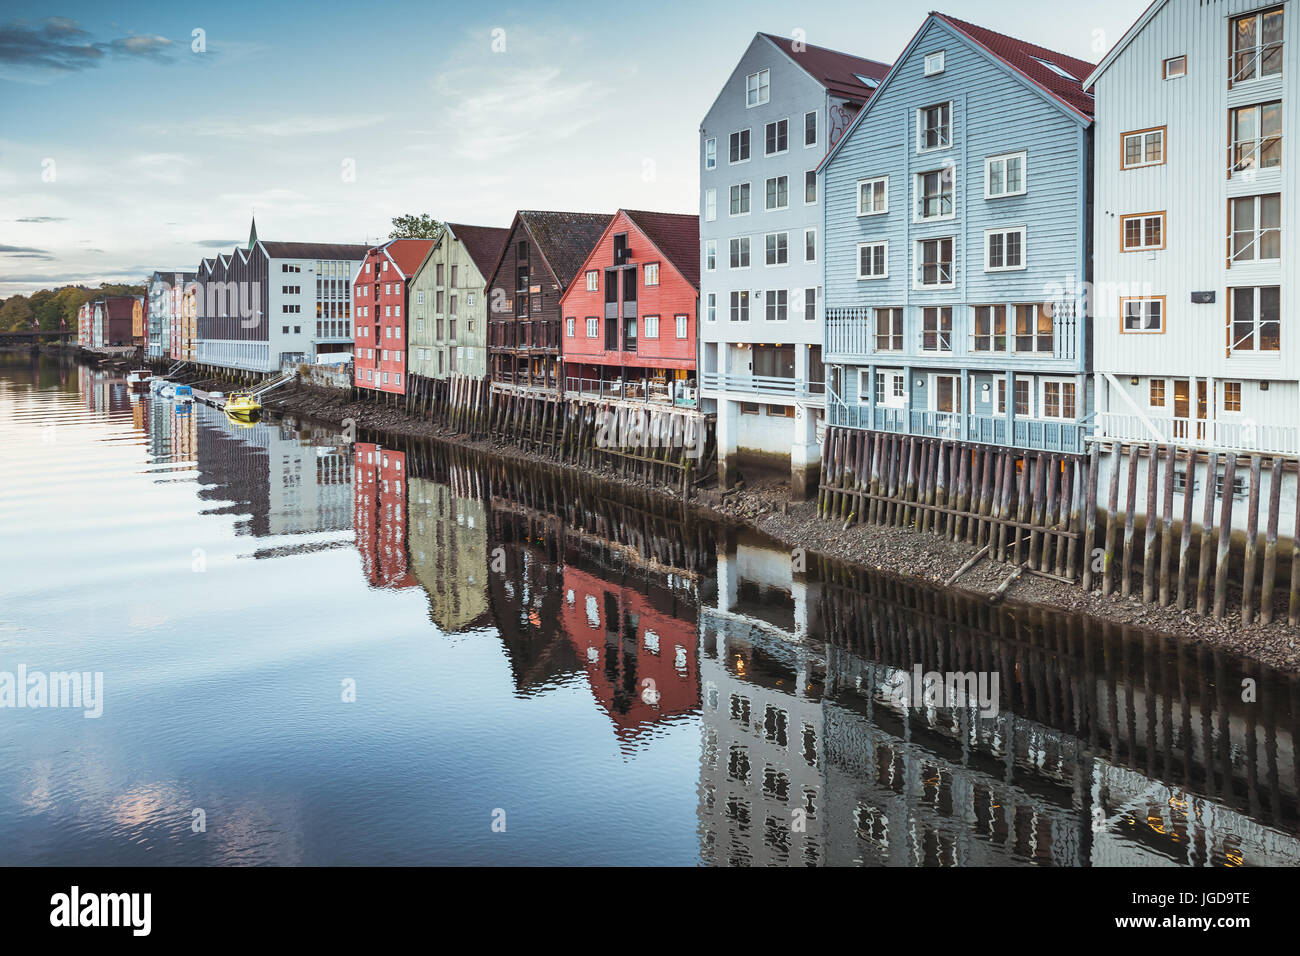 Maisons en bois vivant le long de la côte de la rivière. Trondheim, Norvège. Correction tonale froid filer photo Banque D'Images